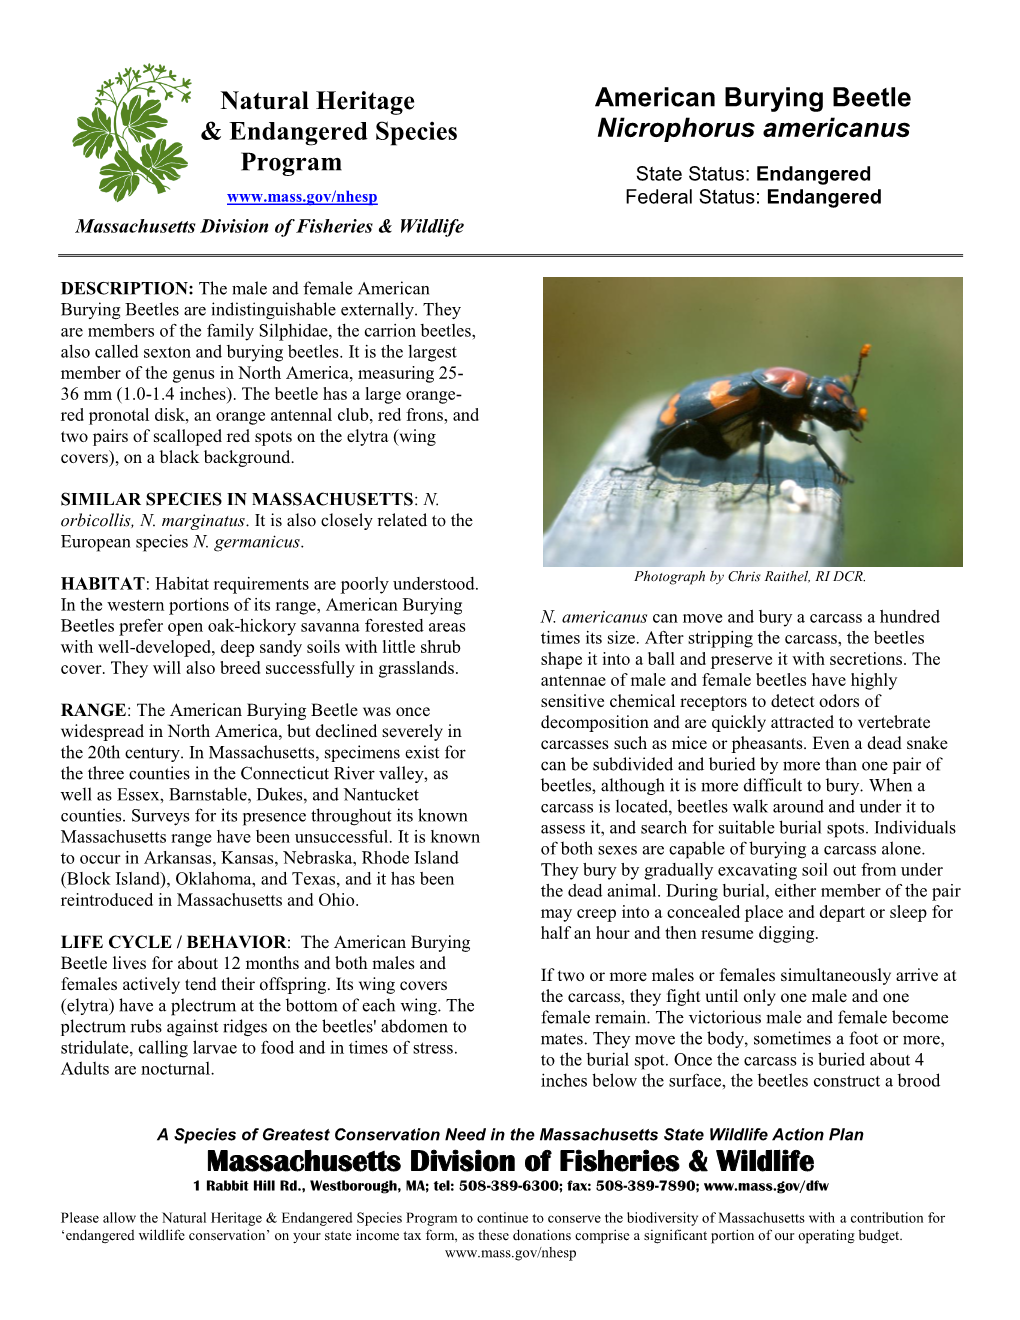 American Burying Beetle & Endangered Species Nicrophorus Americanus